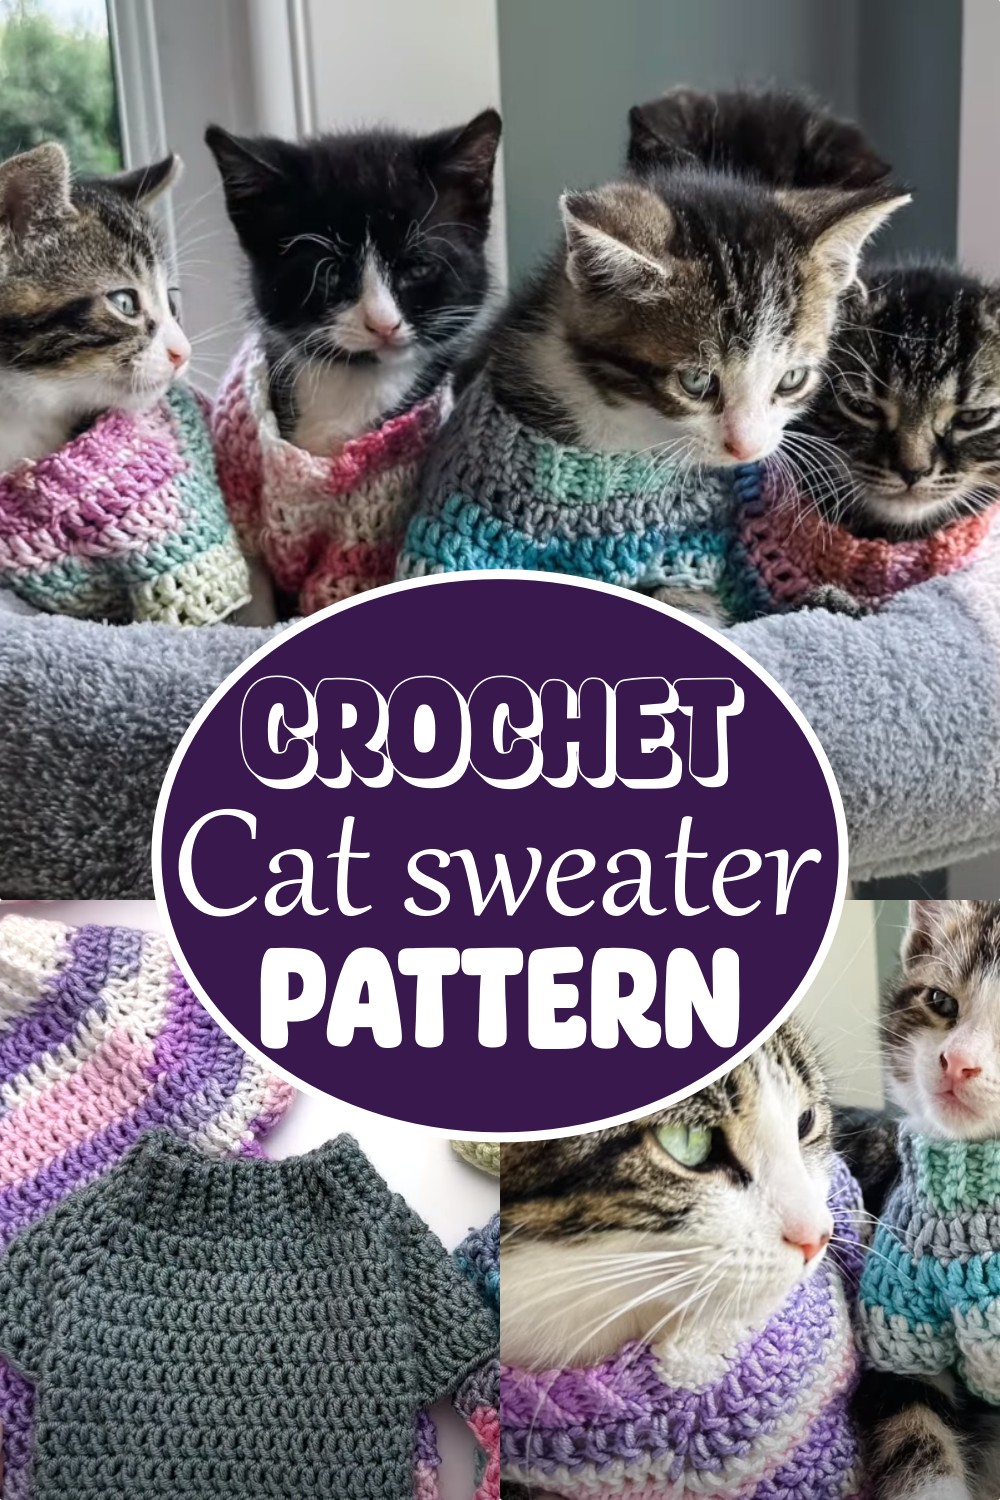 Crochet Cat sweater Pattern 1